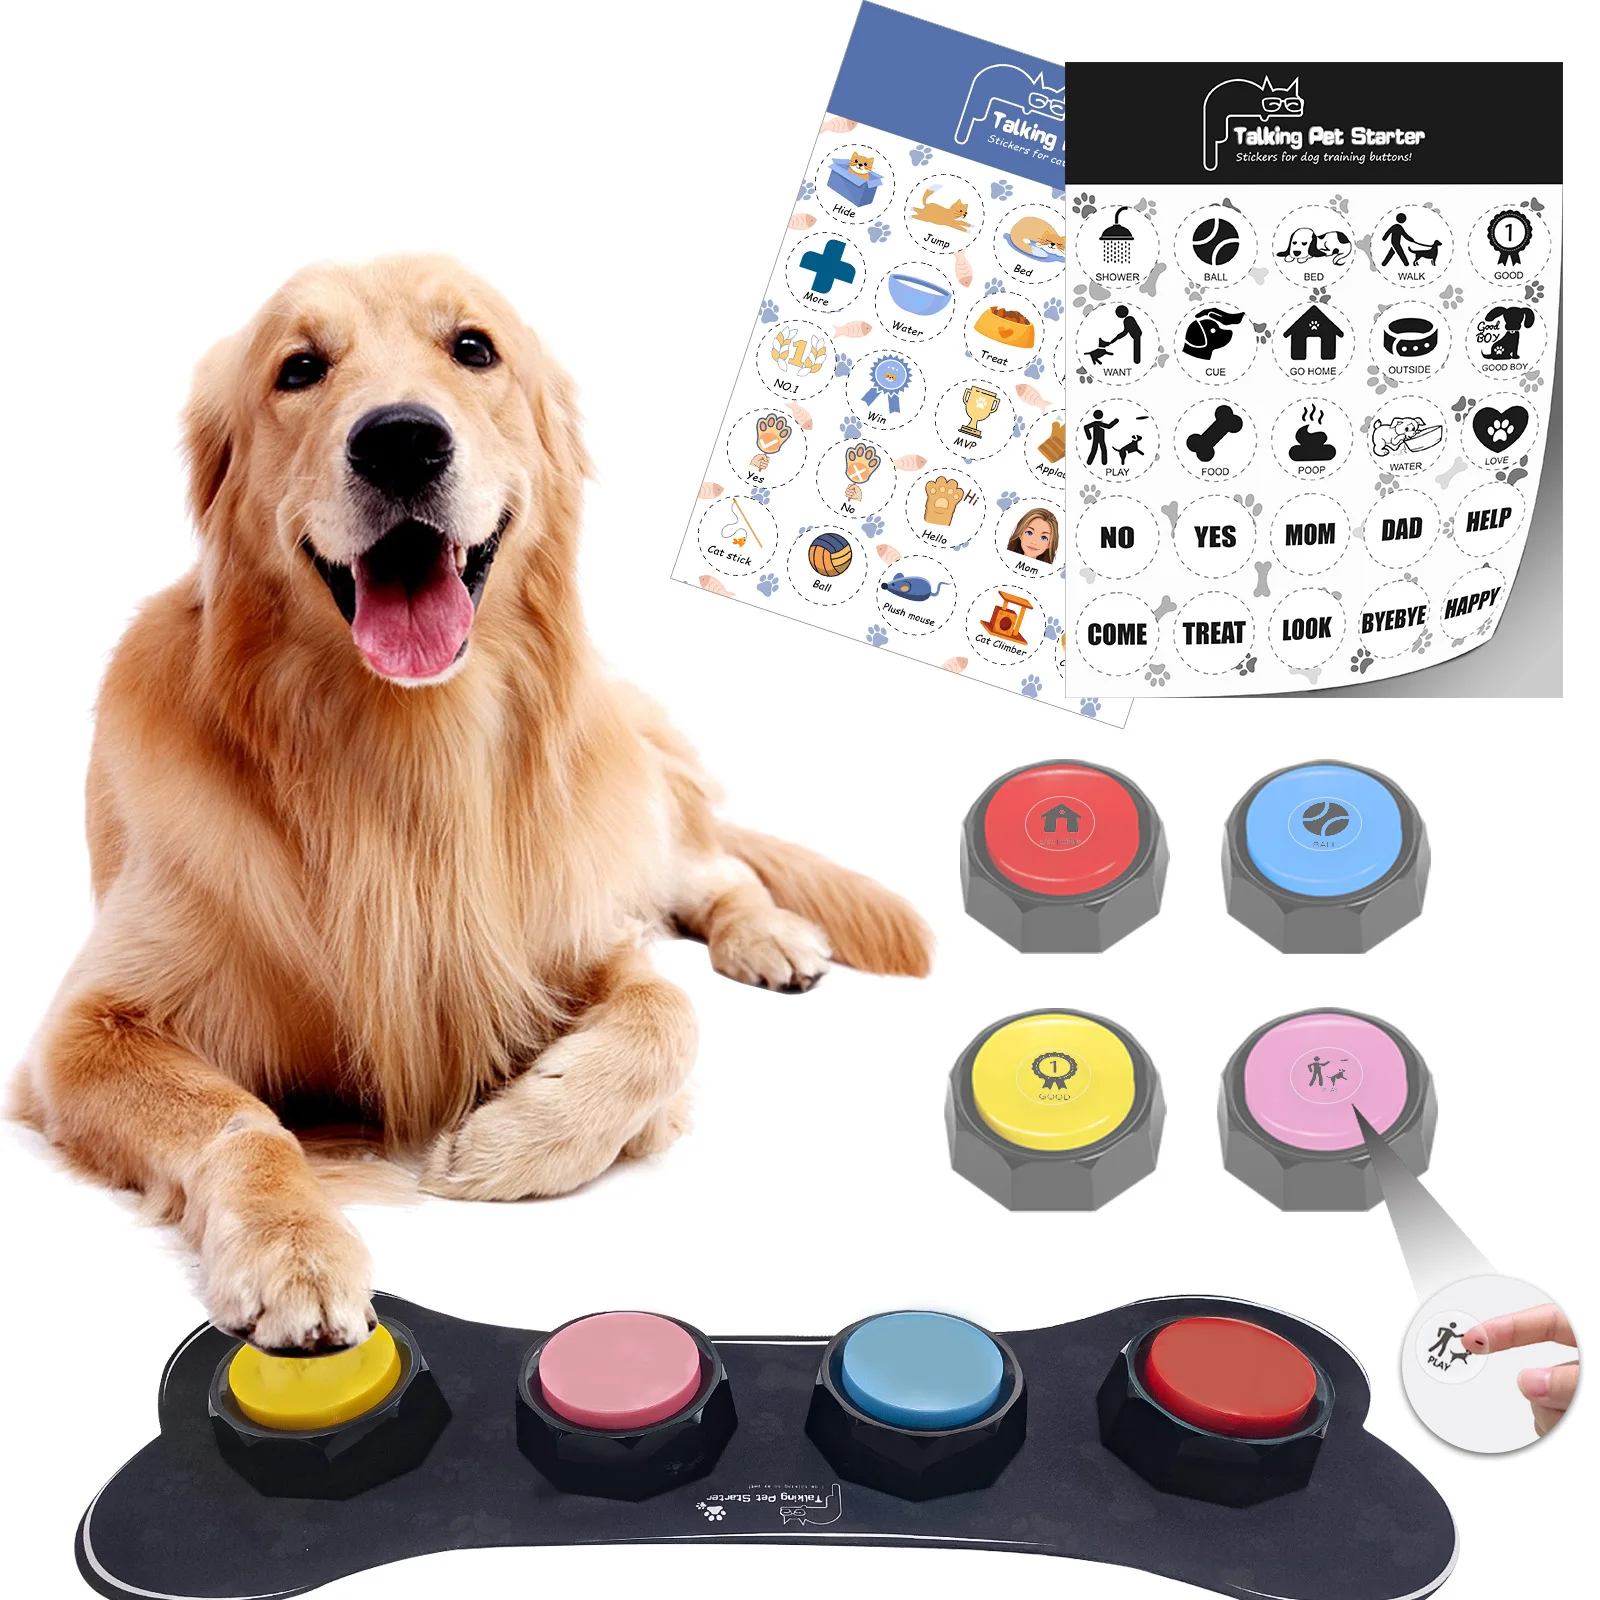 Bộ nút bấm cho chó: Hãy xem bộ nút bấm cho chó để chăm sóc tốt nhất cho thú cưng của bạn. Bộ nút bấm này sẽ giúp cho chúng ta giải quyết các vấn đề liên quan đến sức khỏe và tính cách của chó.